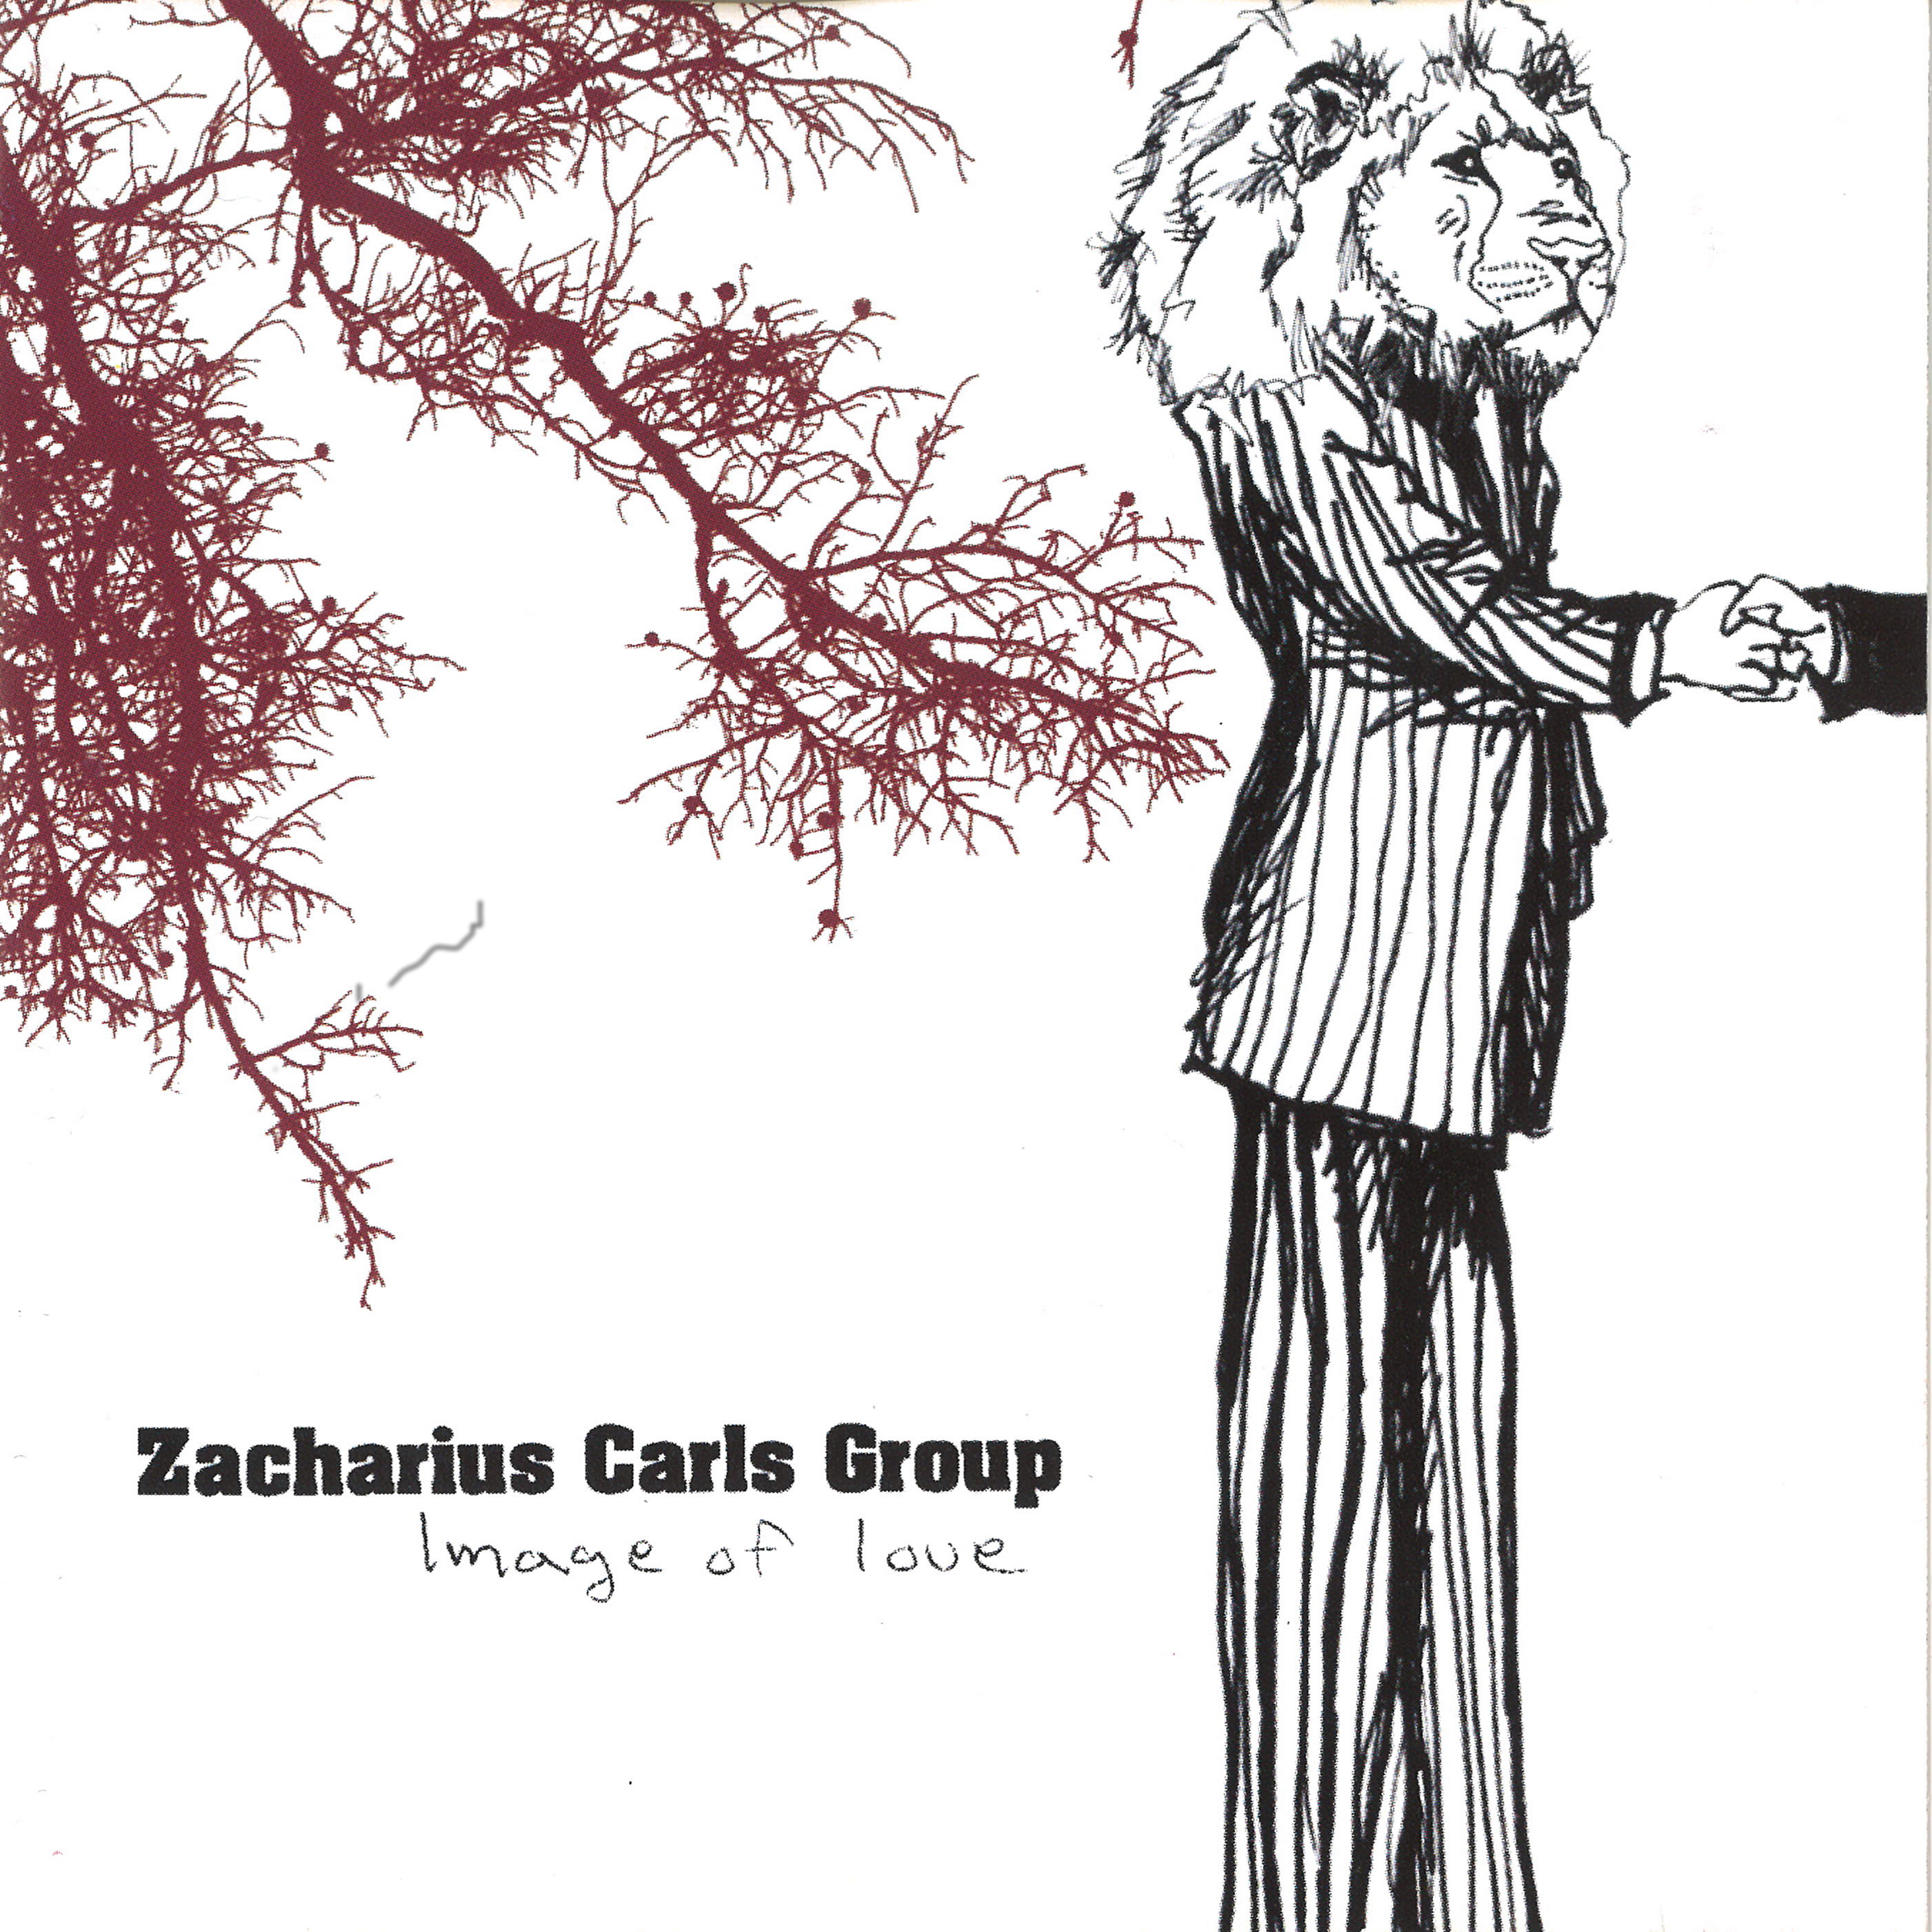 Zacharius Carls Group - Image Of Love - CD